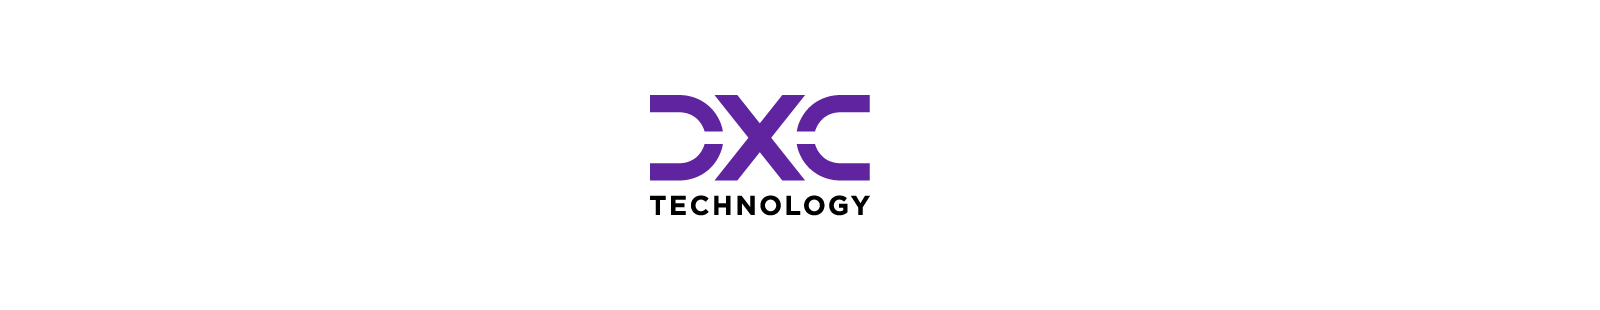 DXC-Logo-1600x310_v2b.jpg